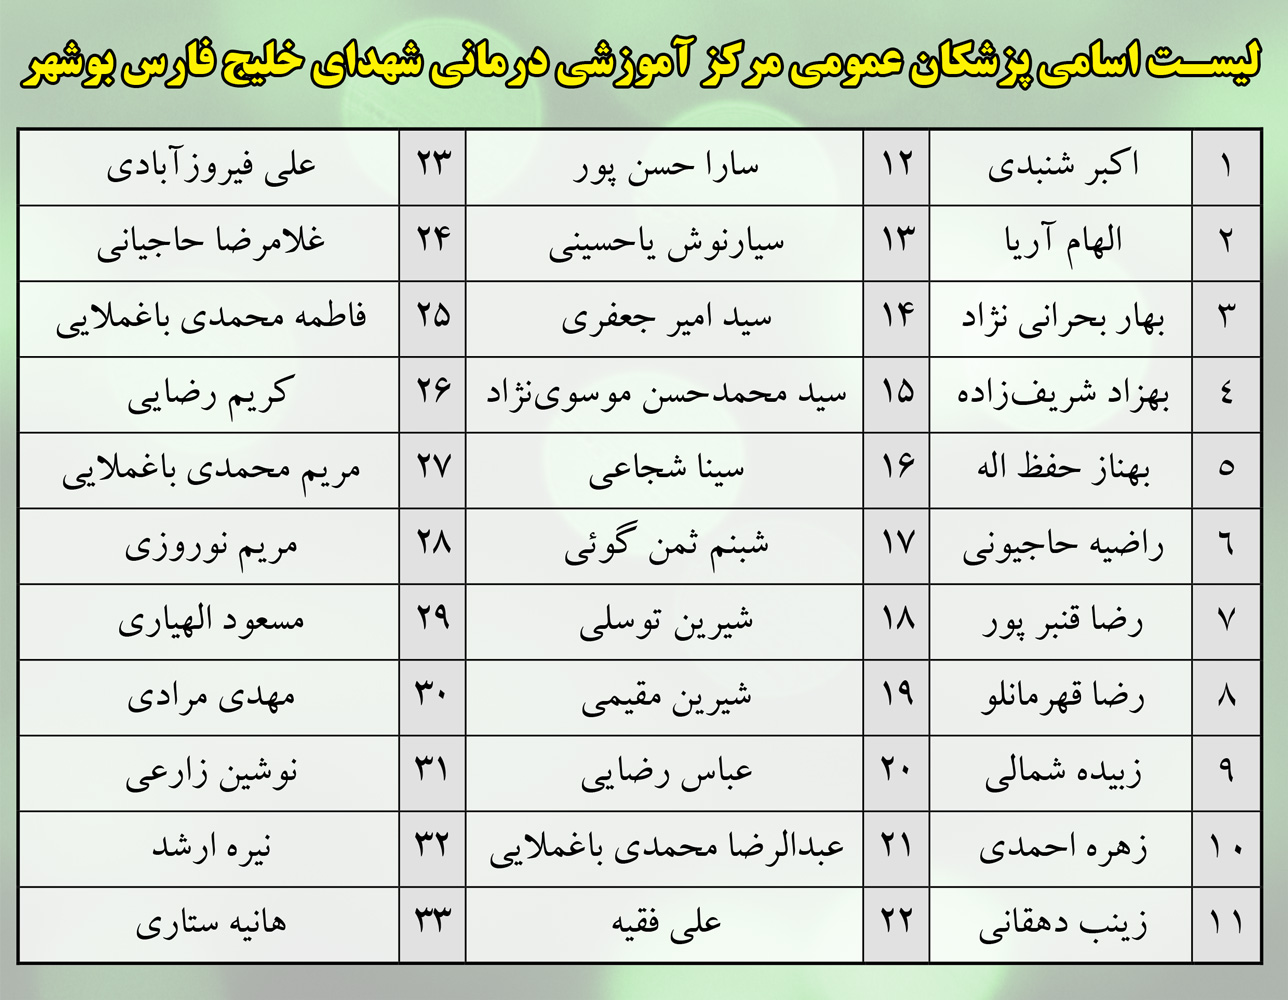 لیست پزشک زنان استان بوشهر
